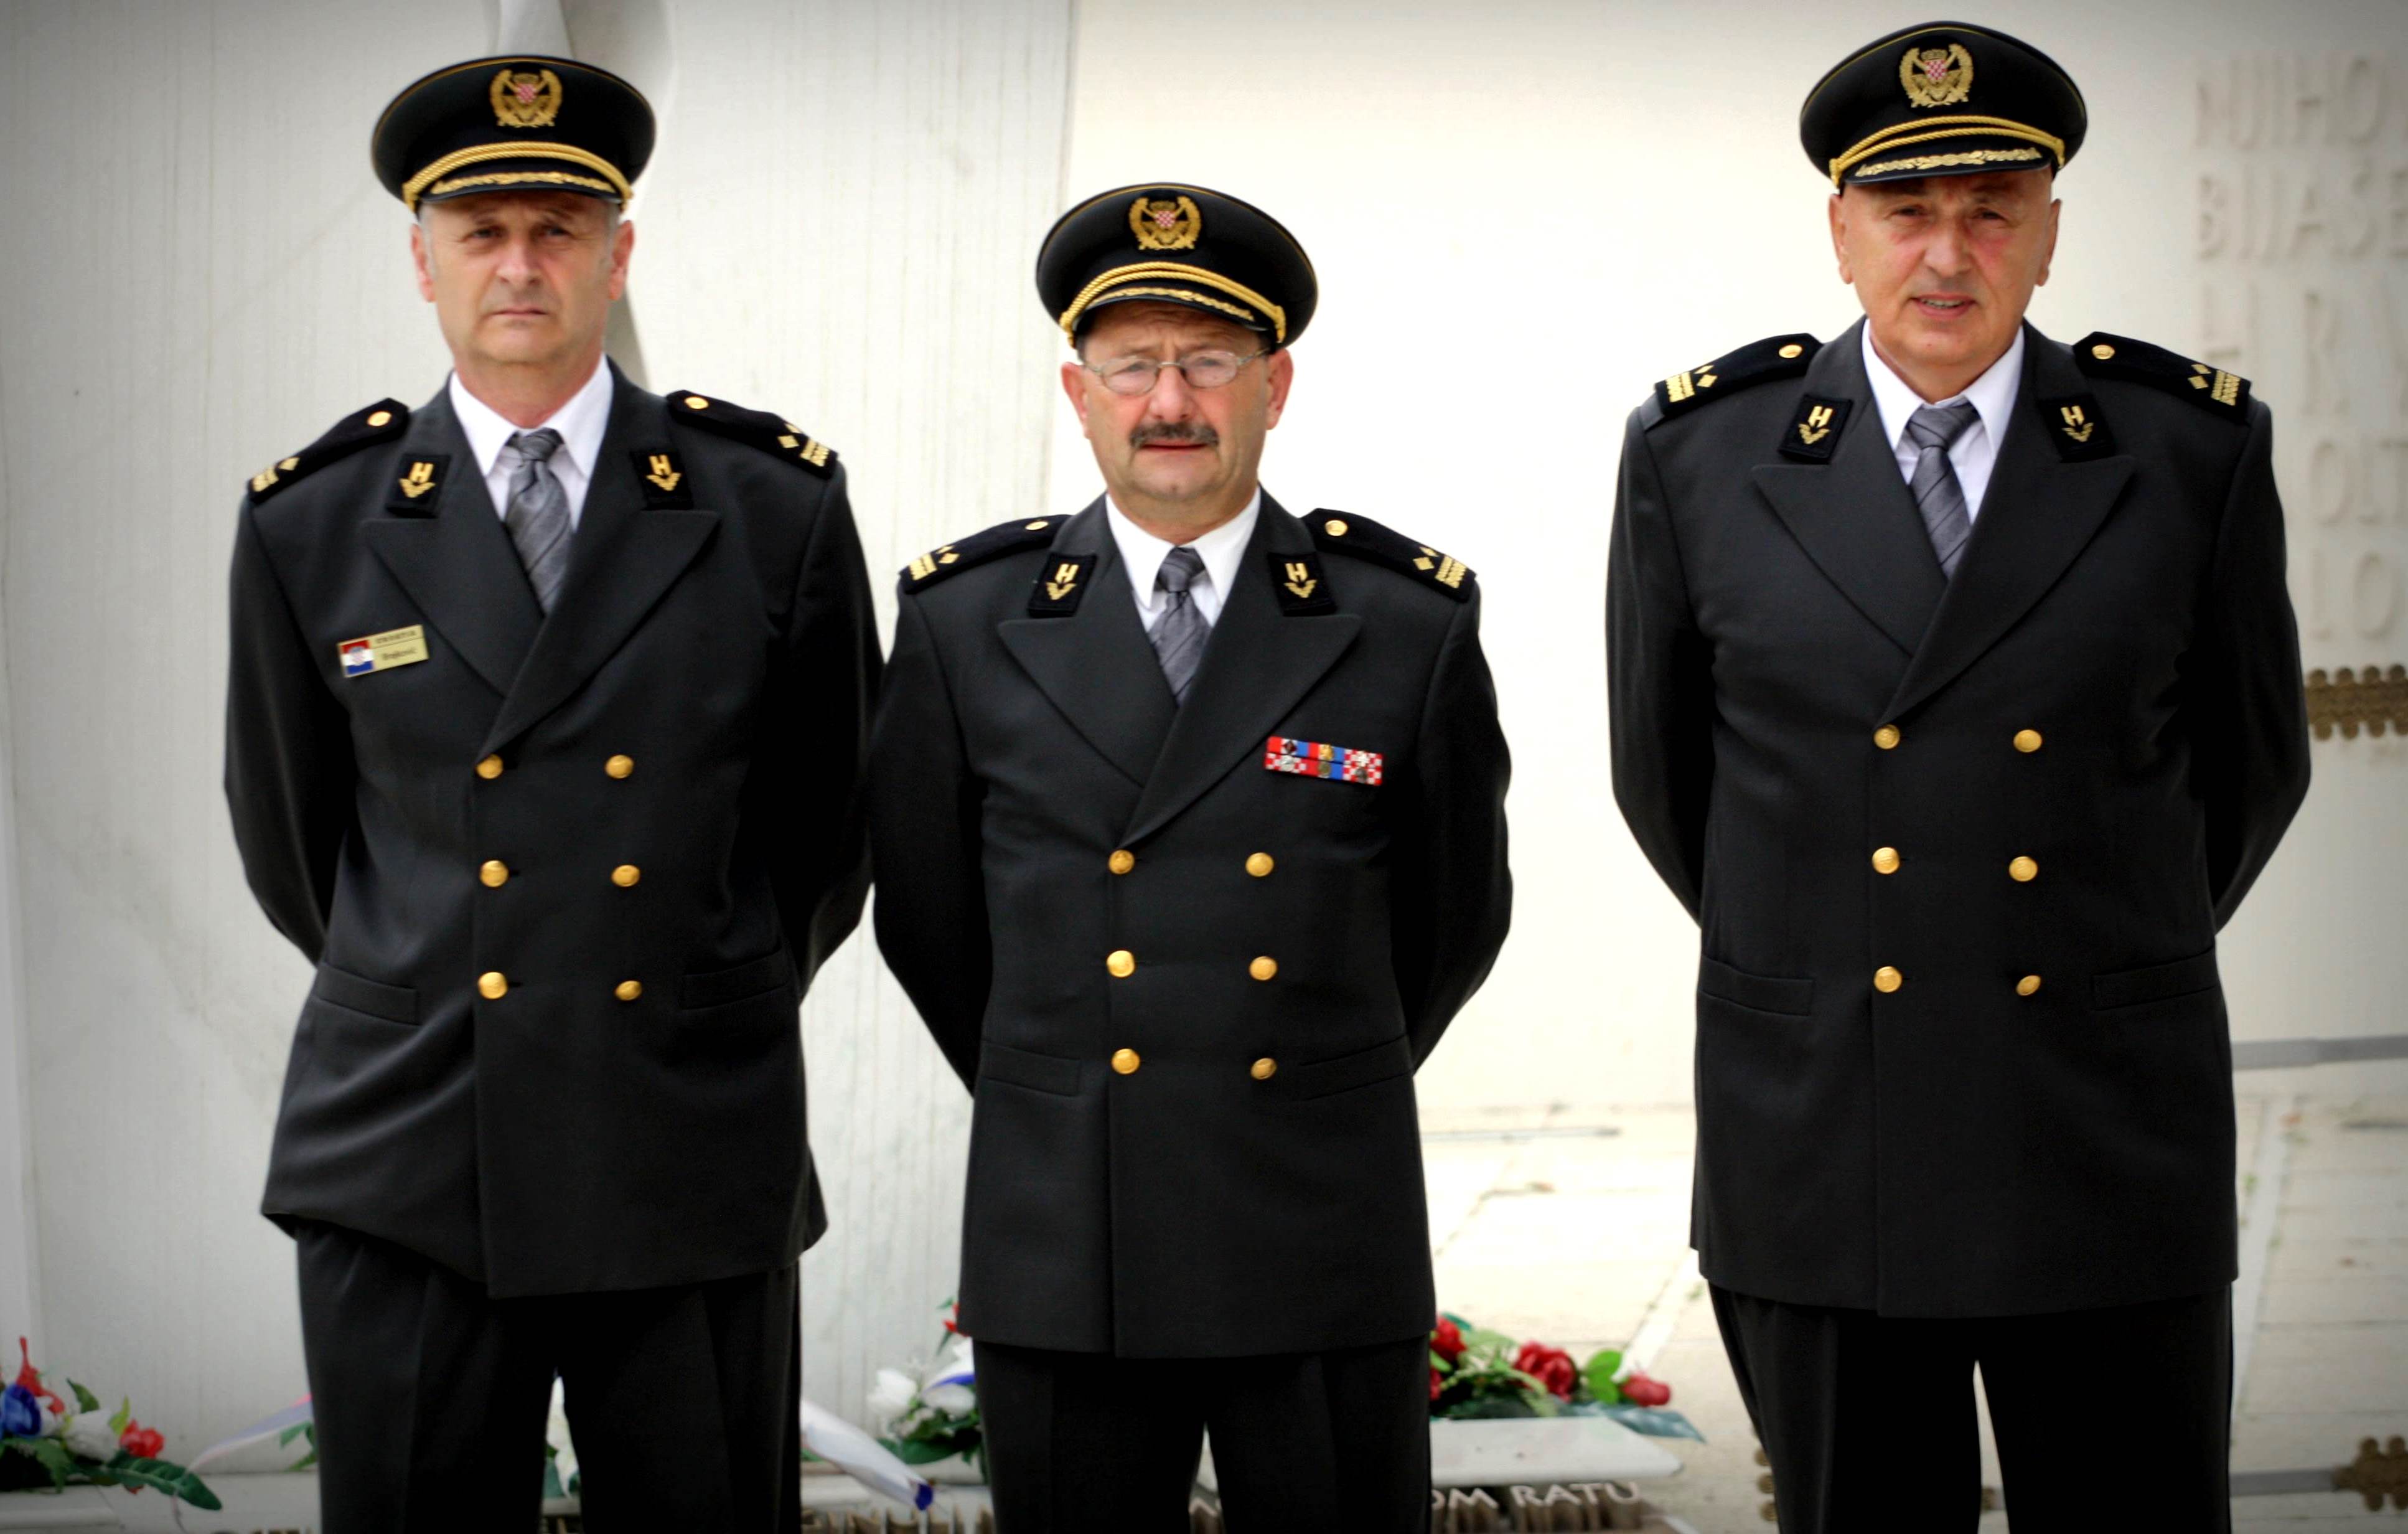 Zapovjednici Ivica Brajković, Davor Peitel, Franjo Janković